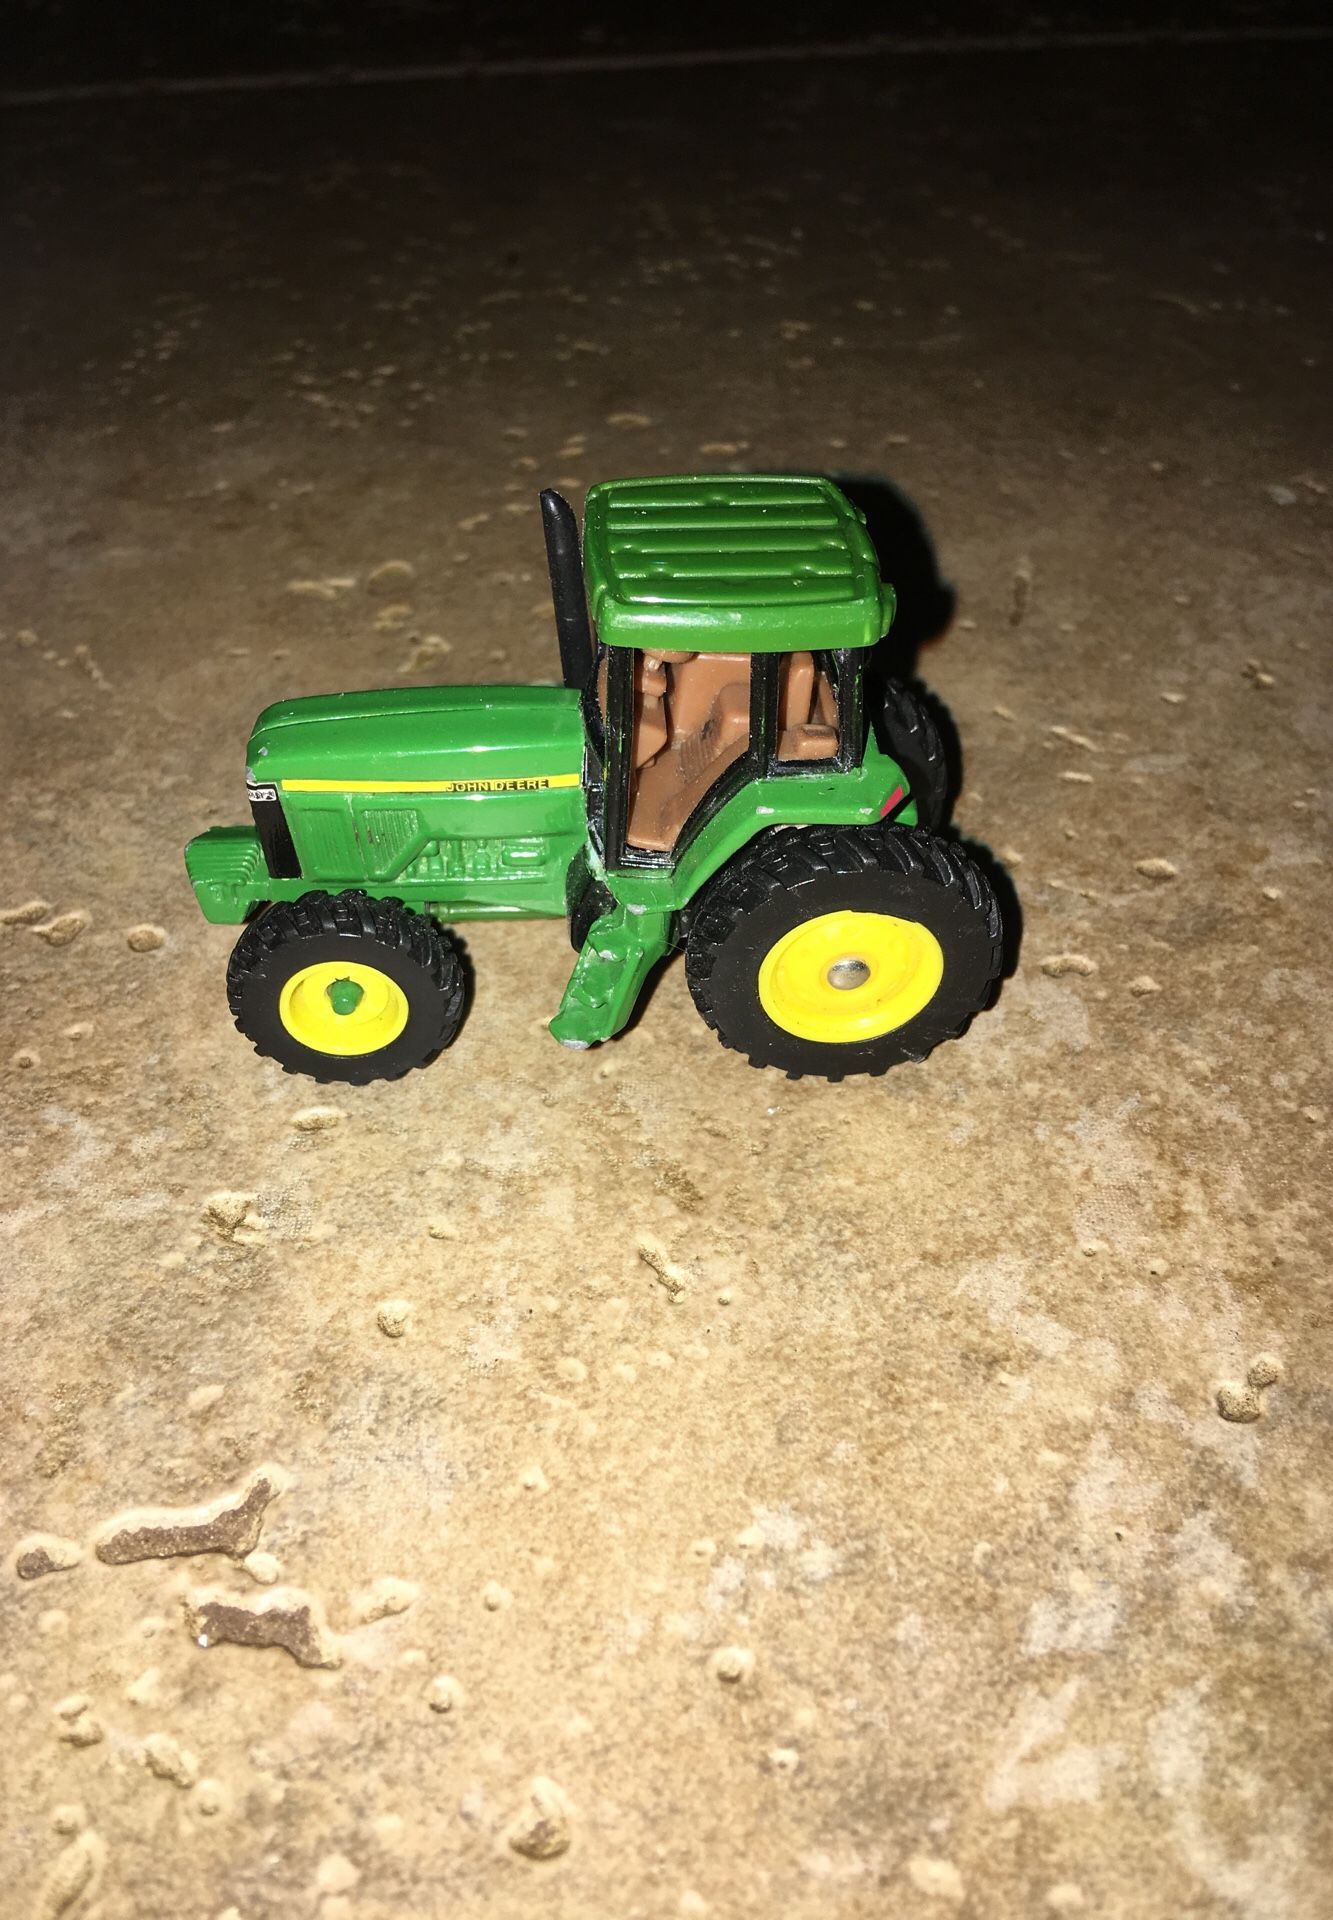 John Deere Small Metal Tractor Toy